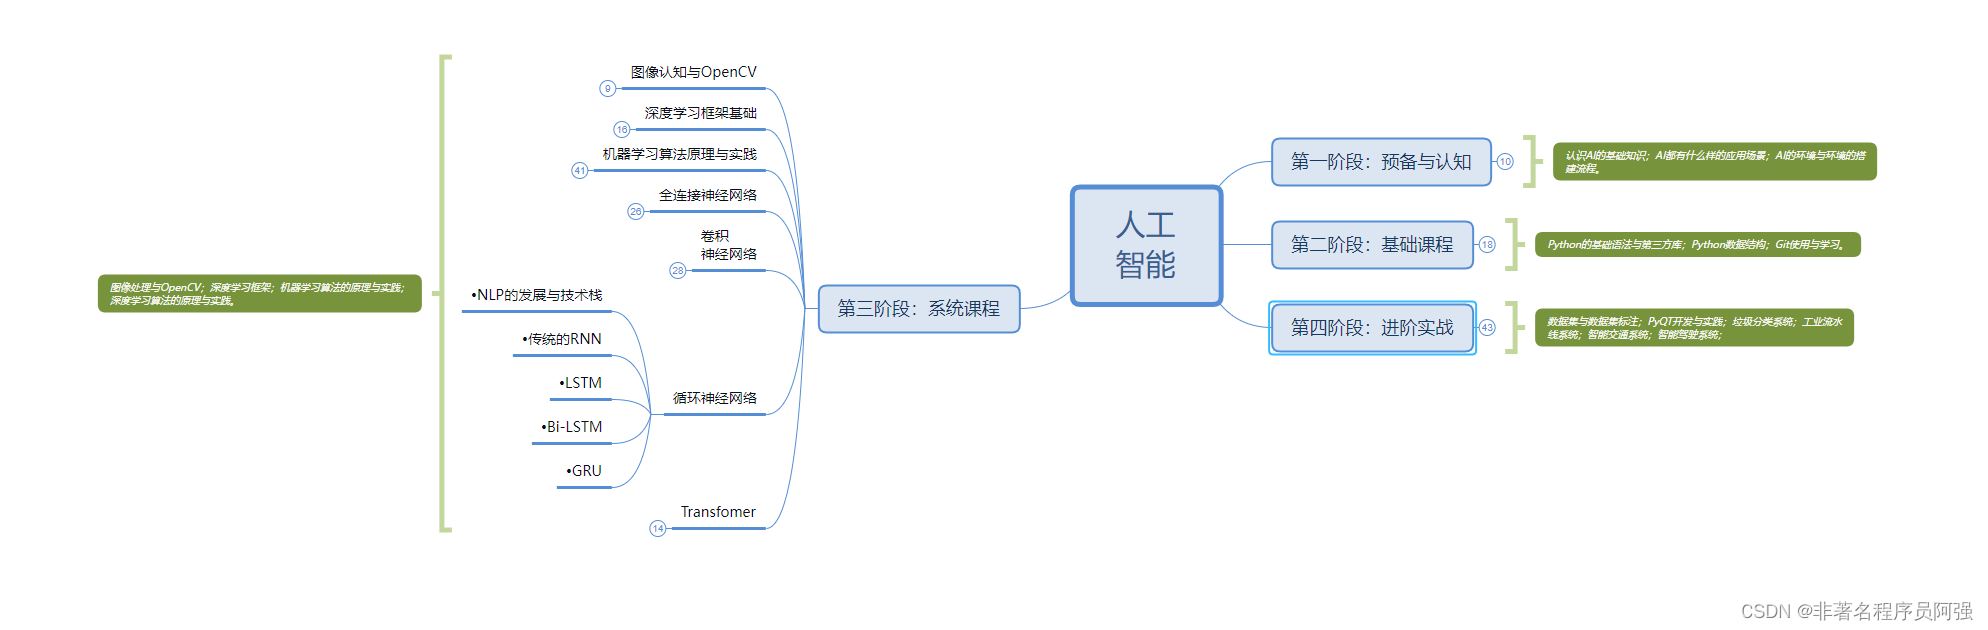 利用Python进行中文分词——实现中文文本处理的基础工具